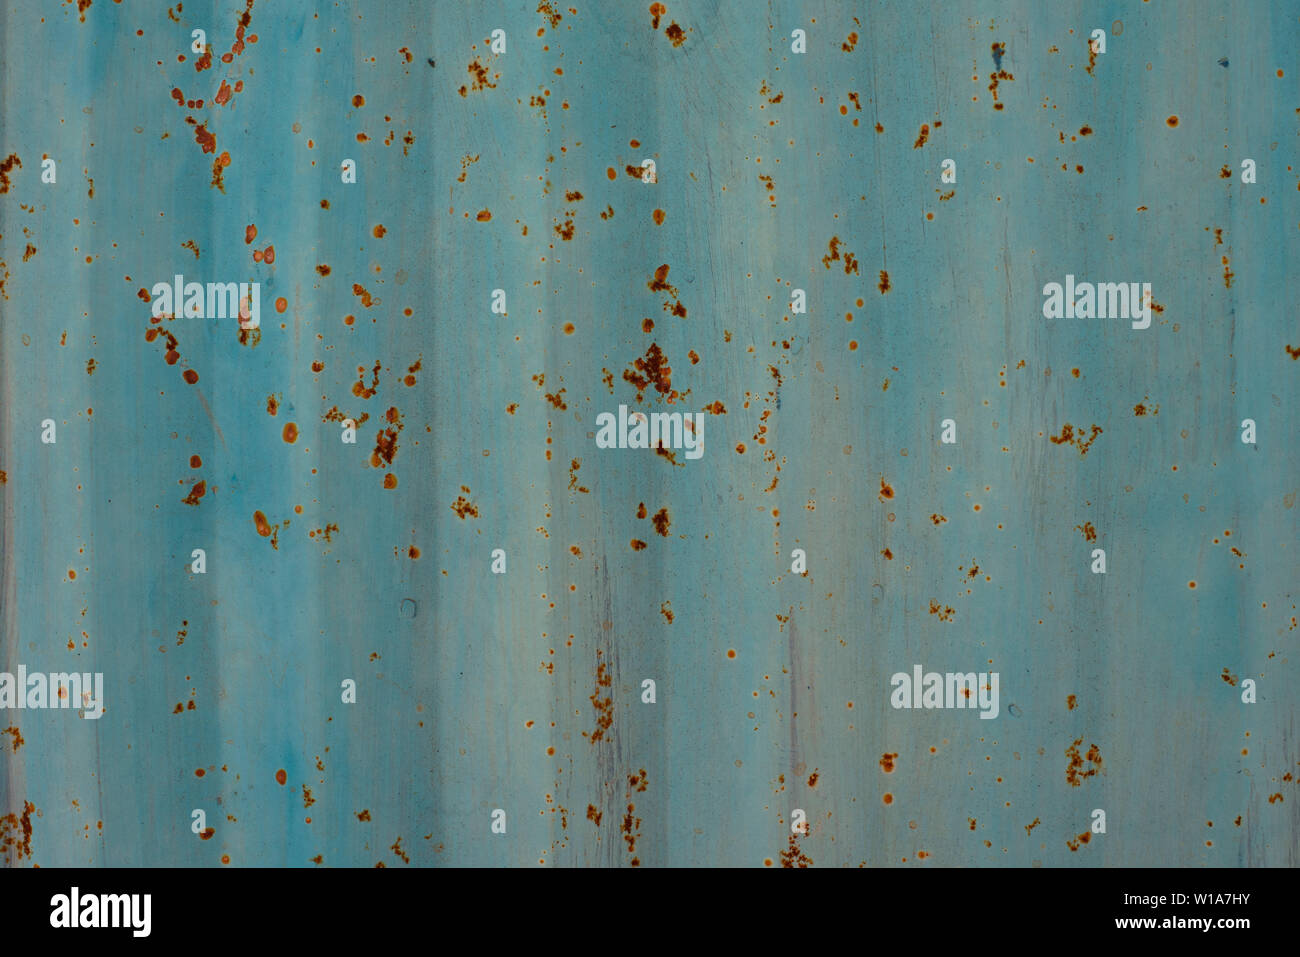 Hellblau/ente Ei aus lackiertem Metall wand Textur Hintergrund. Stripy grunge/Grunge, korrodierende Oberfläche. Stockfoto